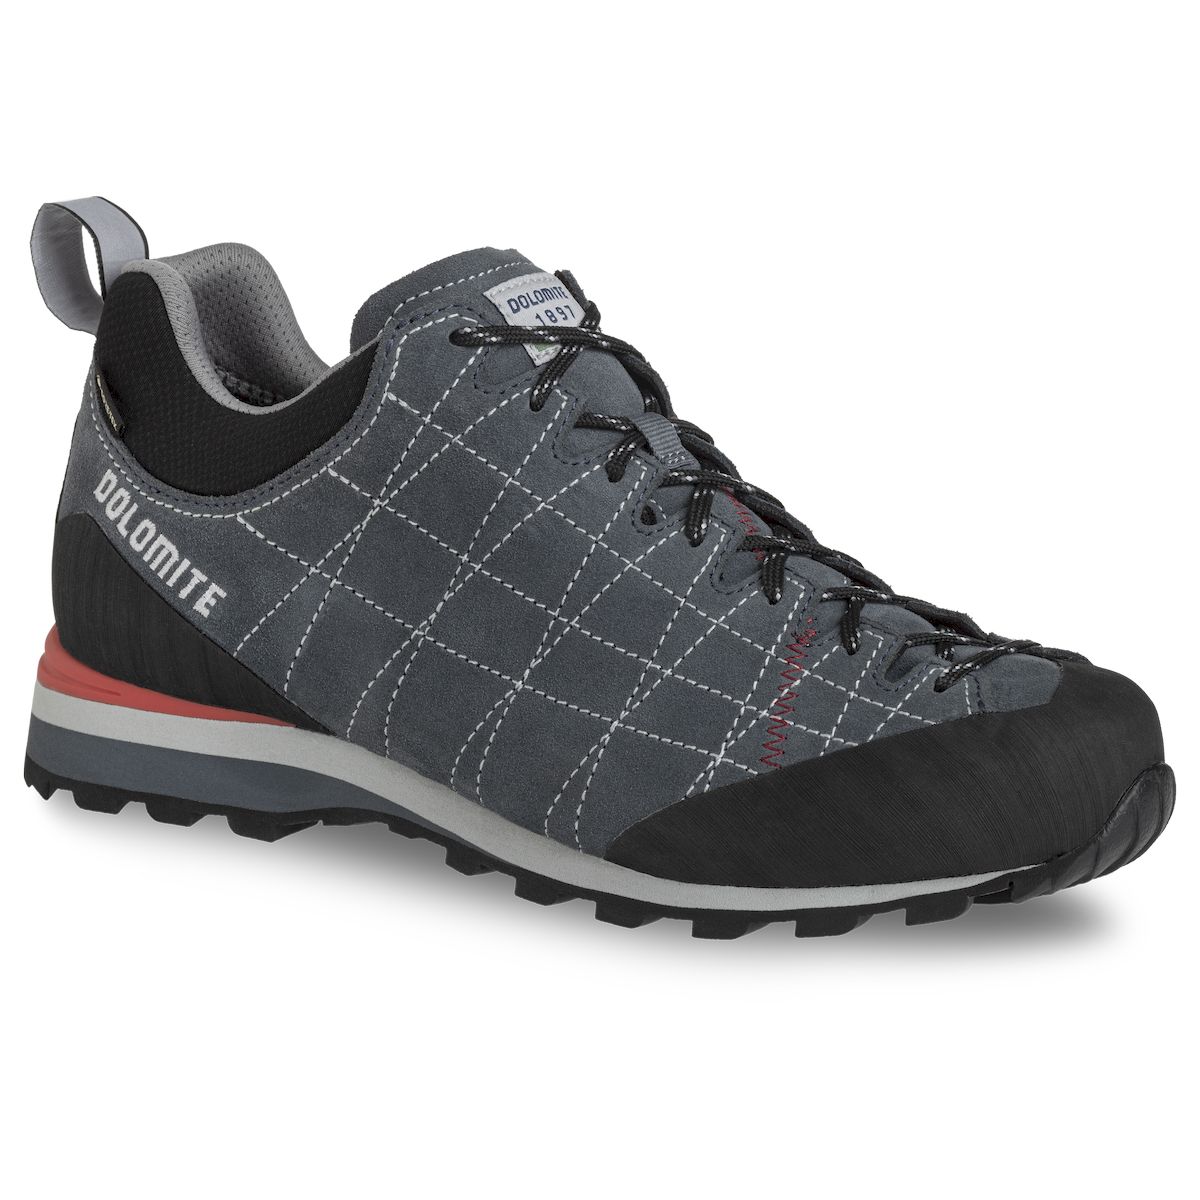 Dolomite Diagonal GTX - Chaussures randonnée homme